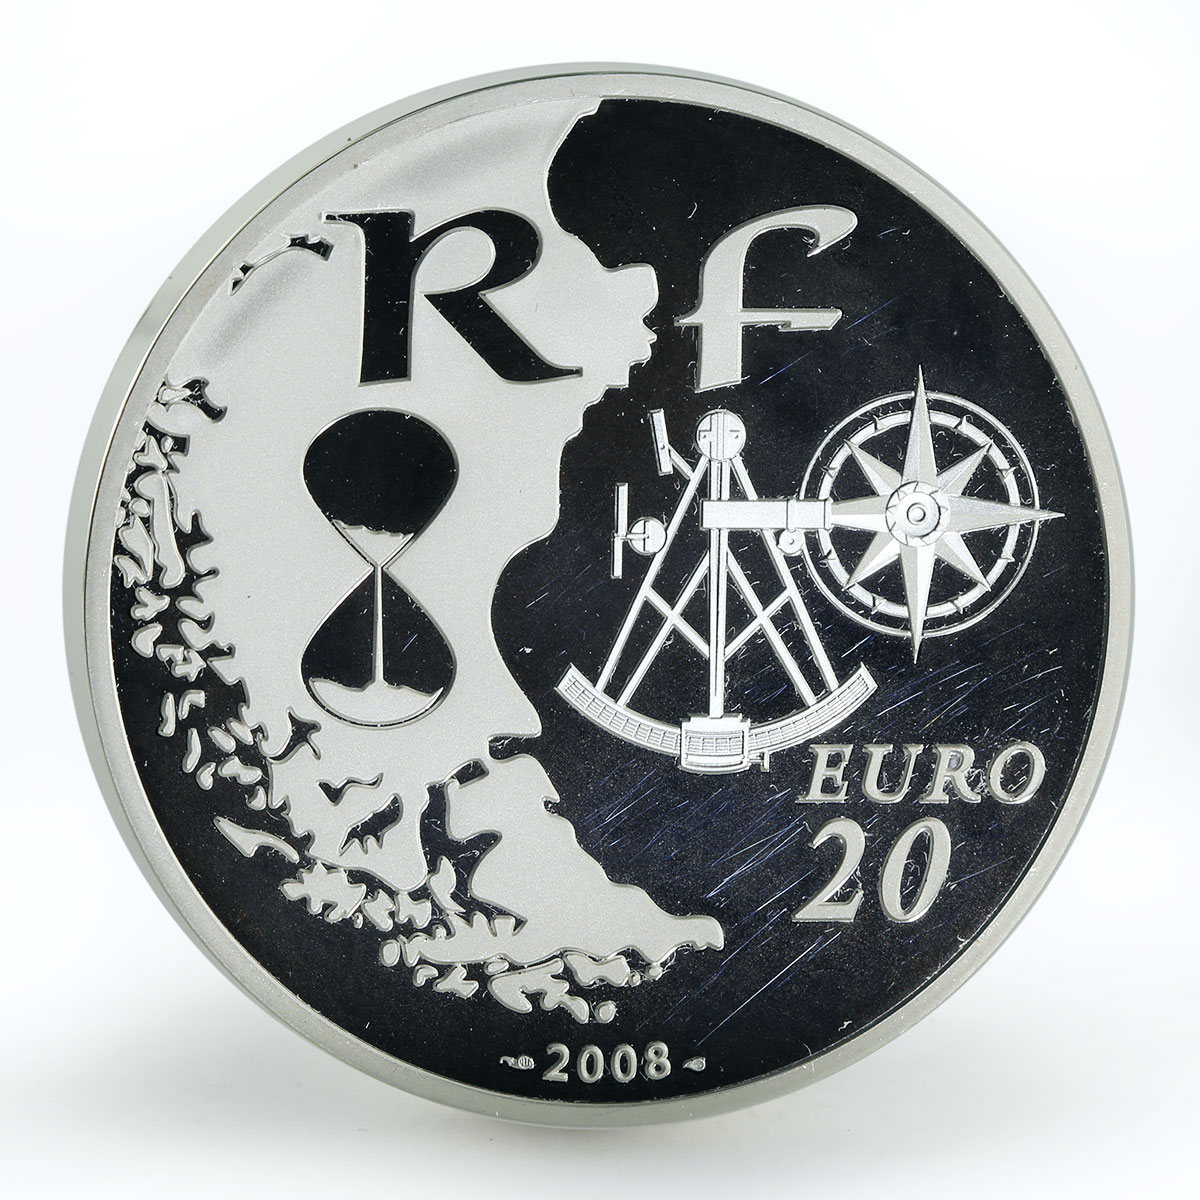 France 20 euro Rouen Armada proof silver coin 2008